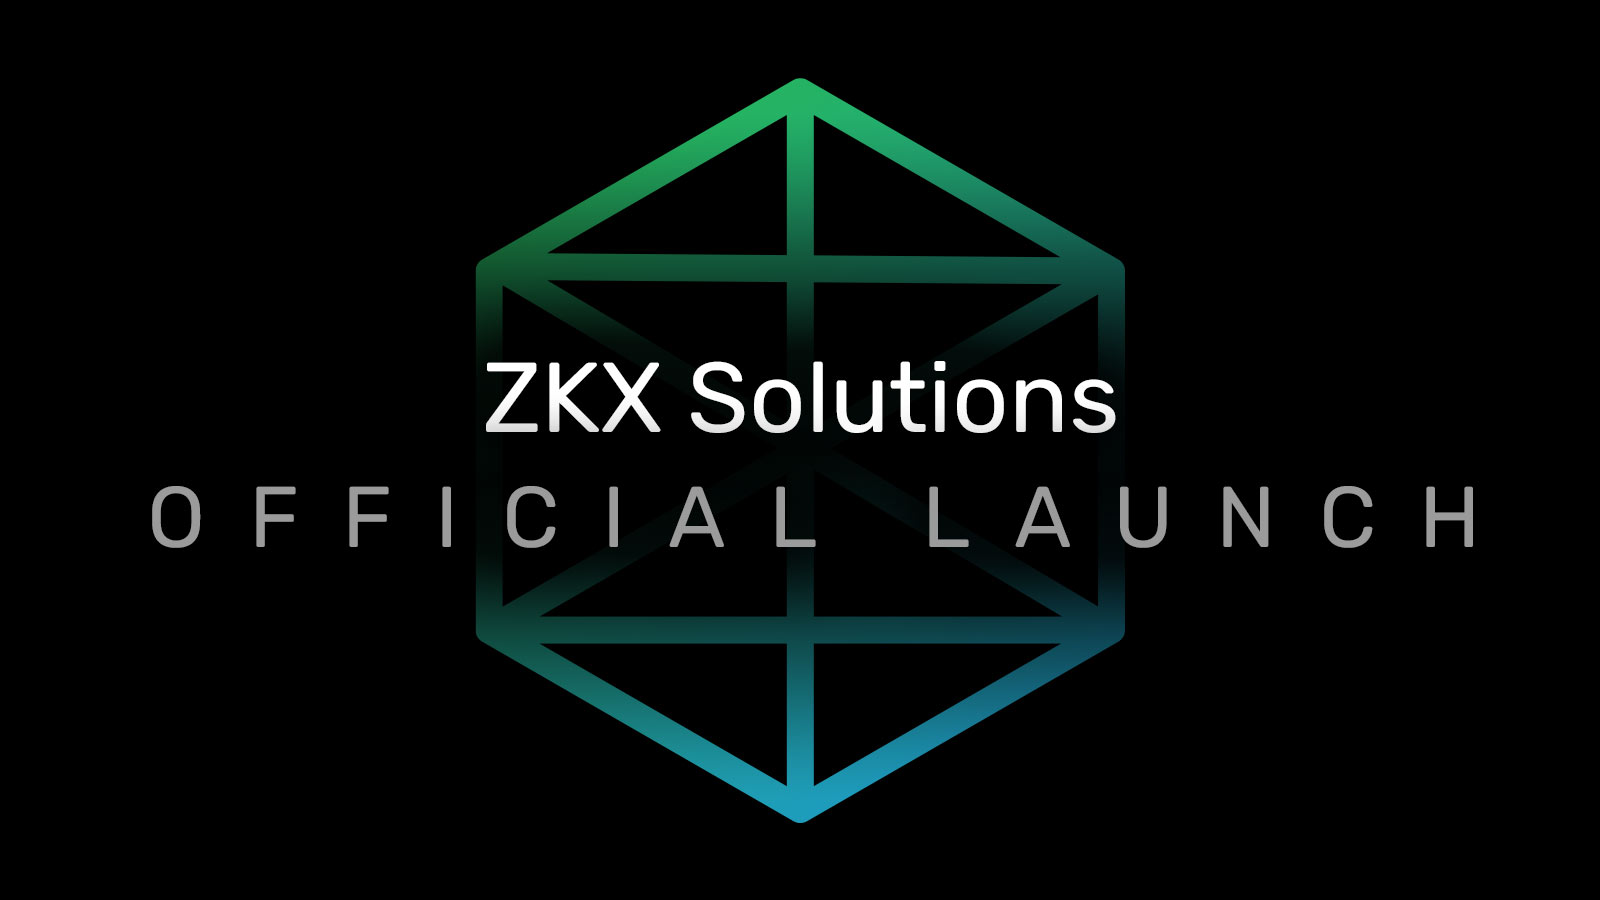 ZKX - a business unit of REDCOM